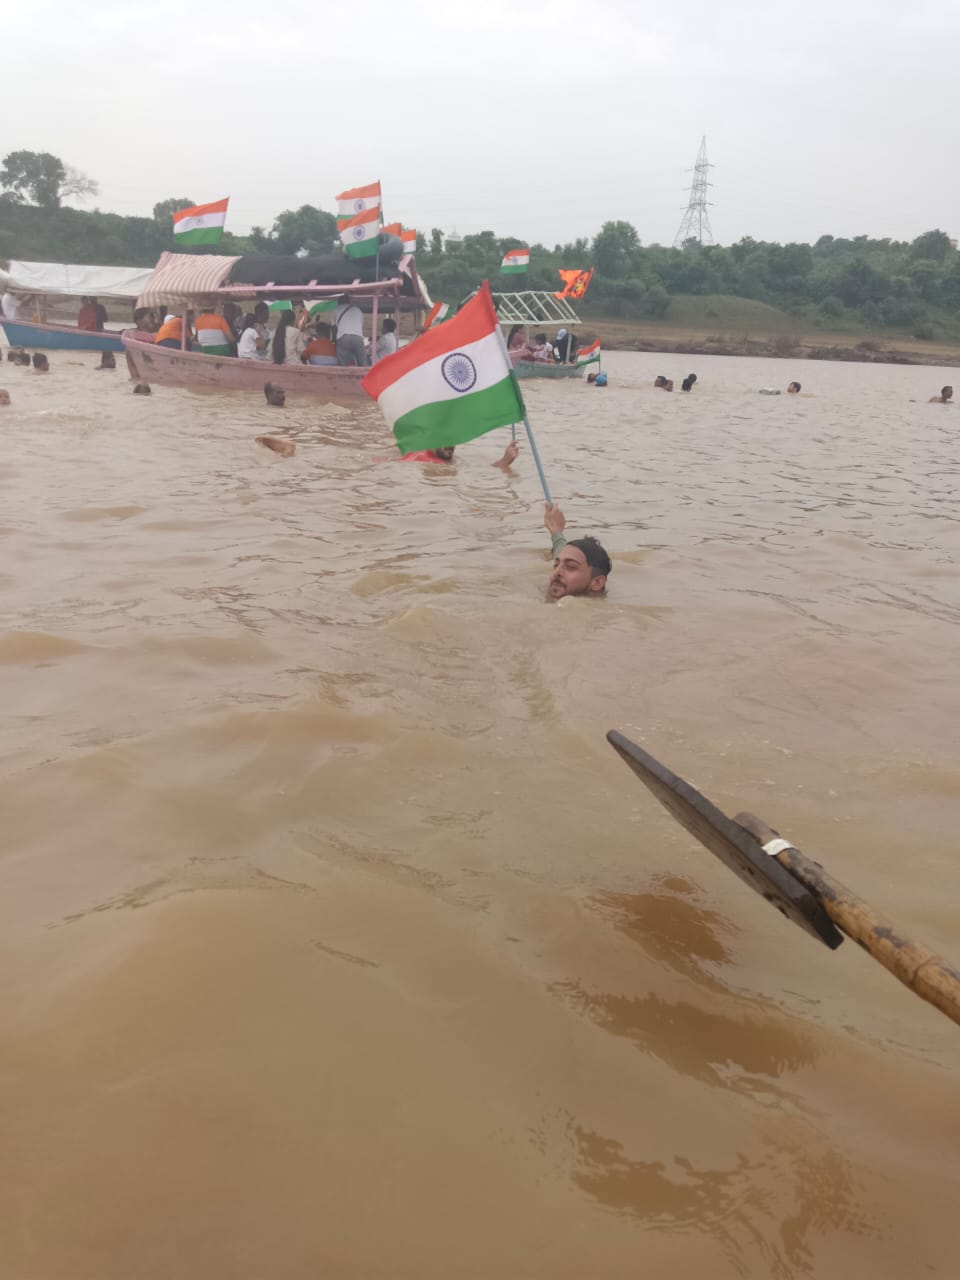 नर्मदा नदी में निकली तिरंगा यात्रा, हाथ में राष्ट्रध्वज लिए लहरों के बीच तैरे सैकड़ों तैराक, ढाई साल की बच्ची बनी आकर्षण का केंद्र